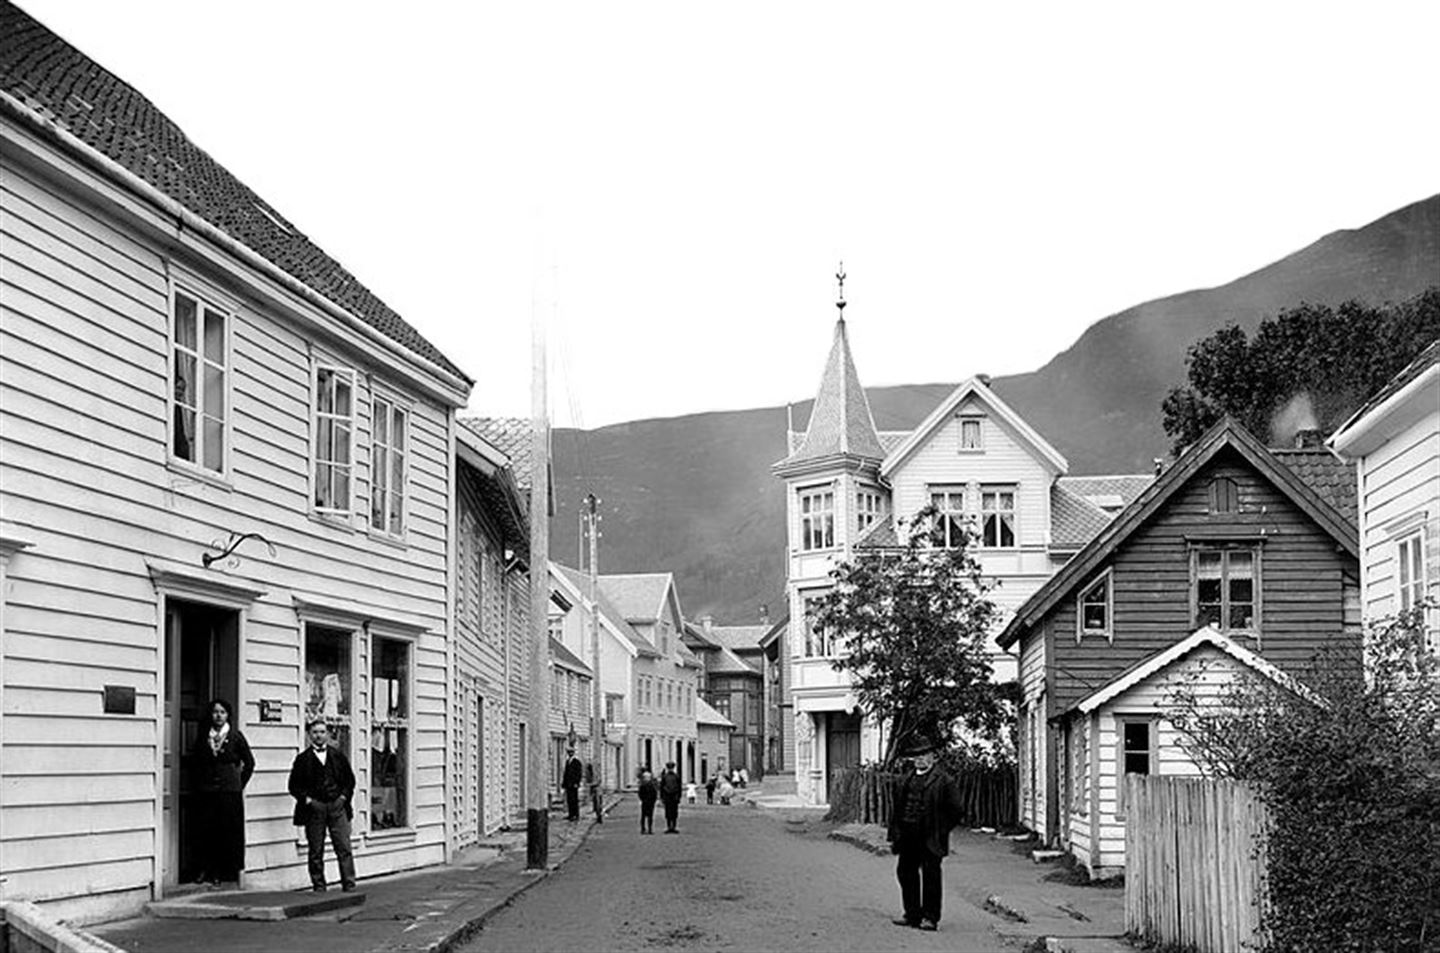 Eit historisk bilete av Eidsgata i Stad kommune, med fleire menn i dress langs gata.



